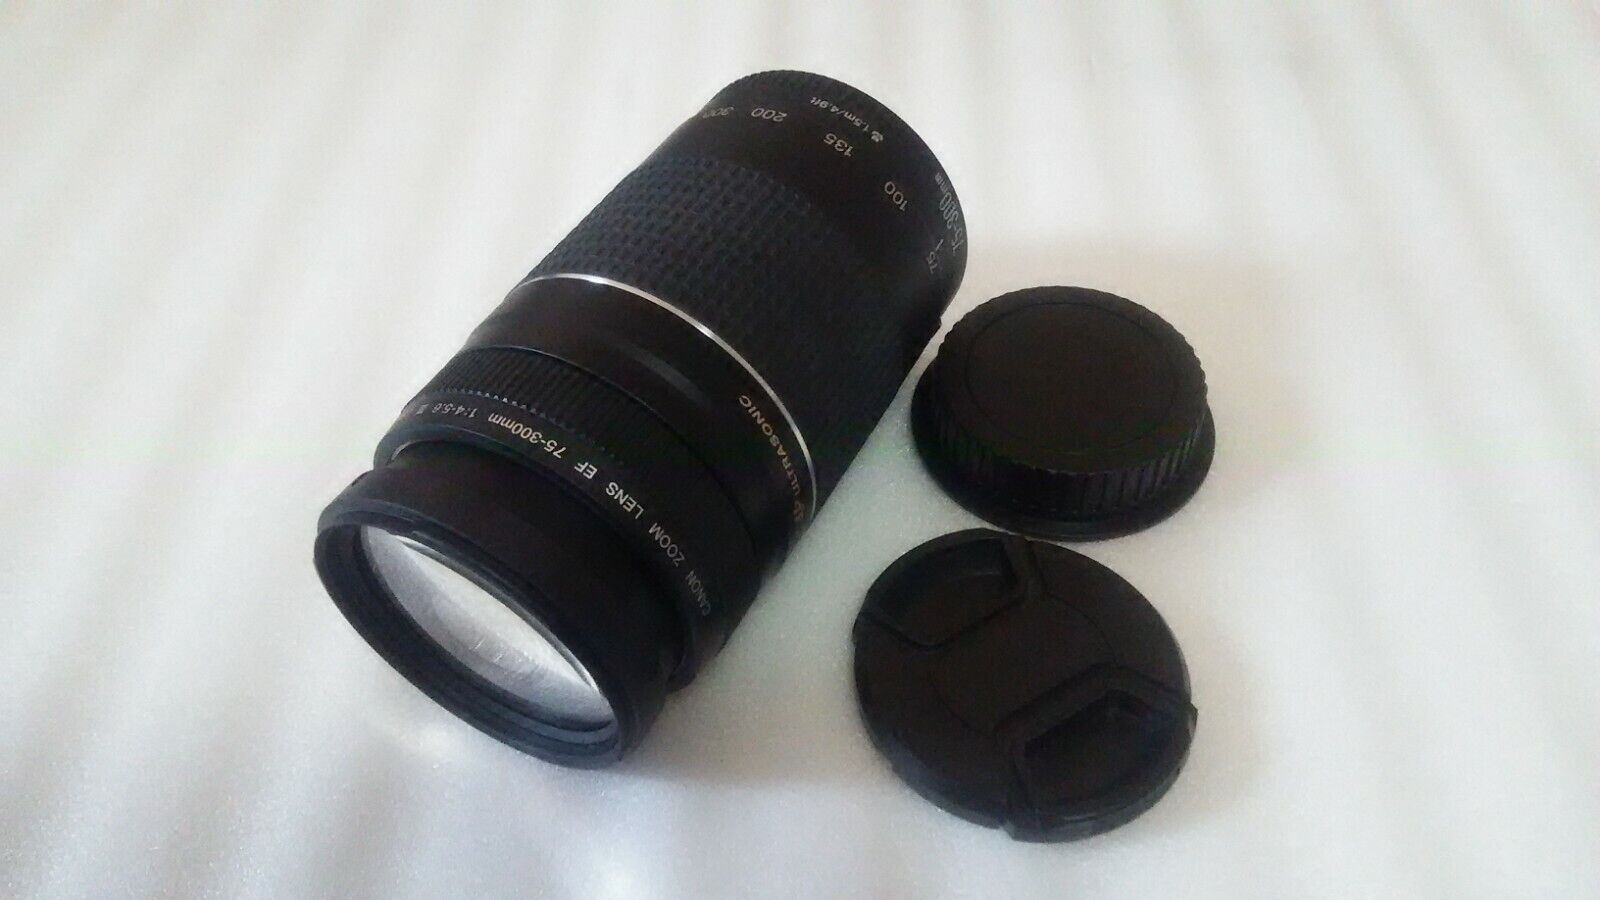 Canon EF 90-300mm f/4.5-5.6 USM Lens for sale online | eBay